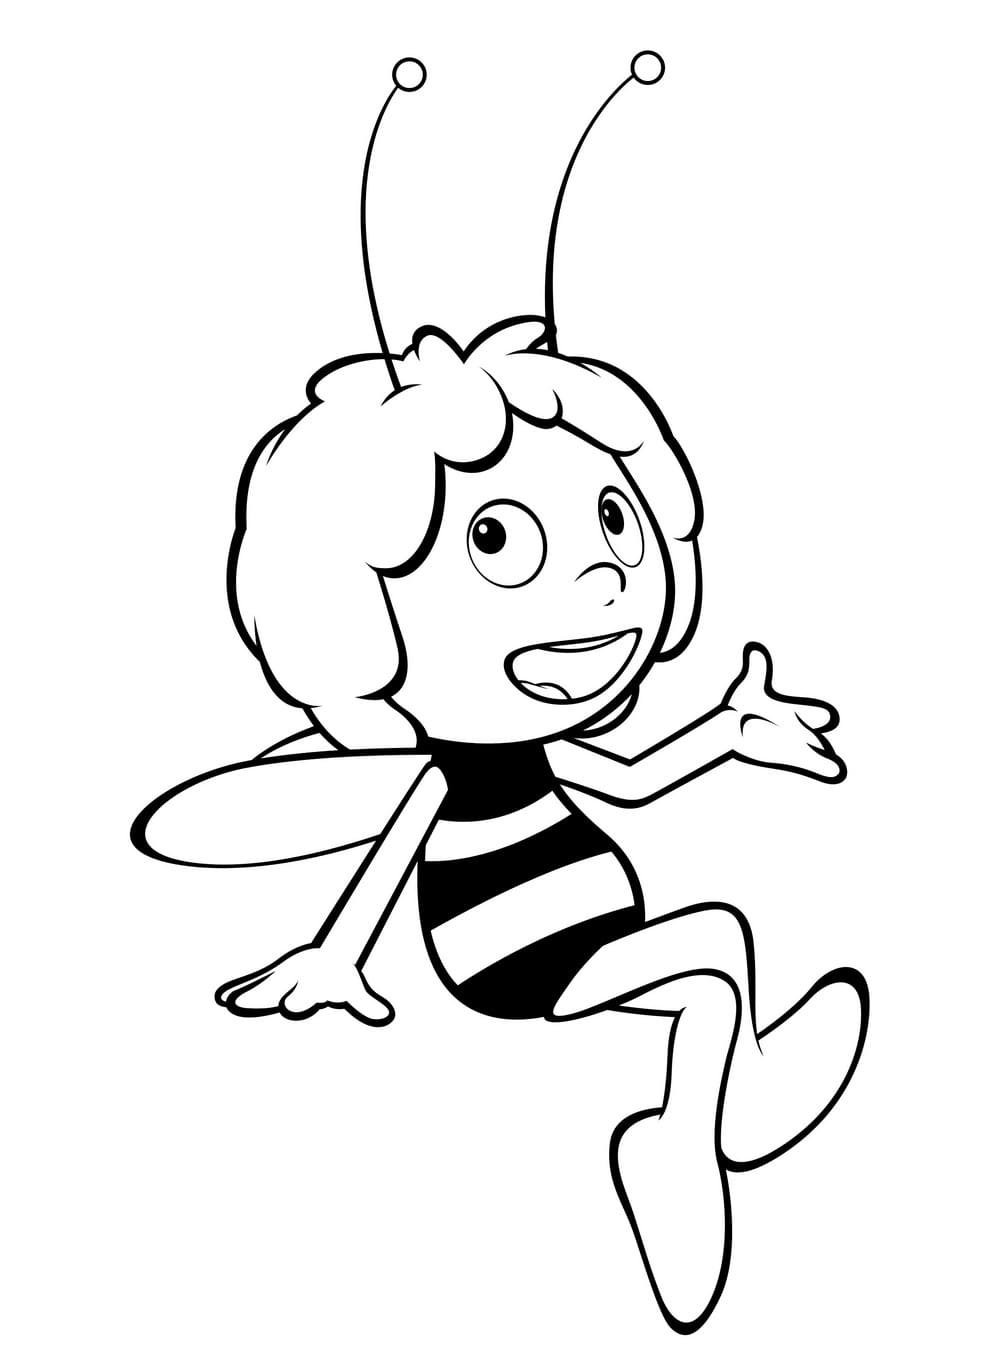 Пчелка раскраска распечатать. Пчёлка Майя 1912. Пчелка Майя раскраска. Раскраска Пчелка Майя раскраска пчёлка Майя. Пчелка Майя раскраска для детей.